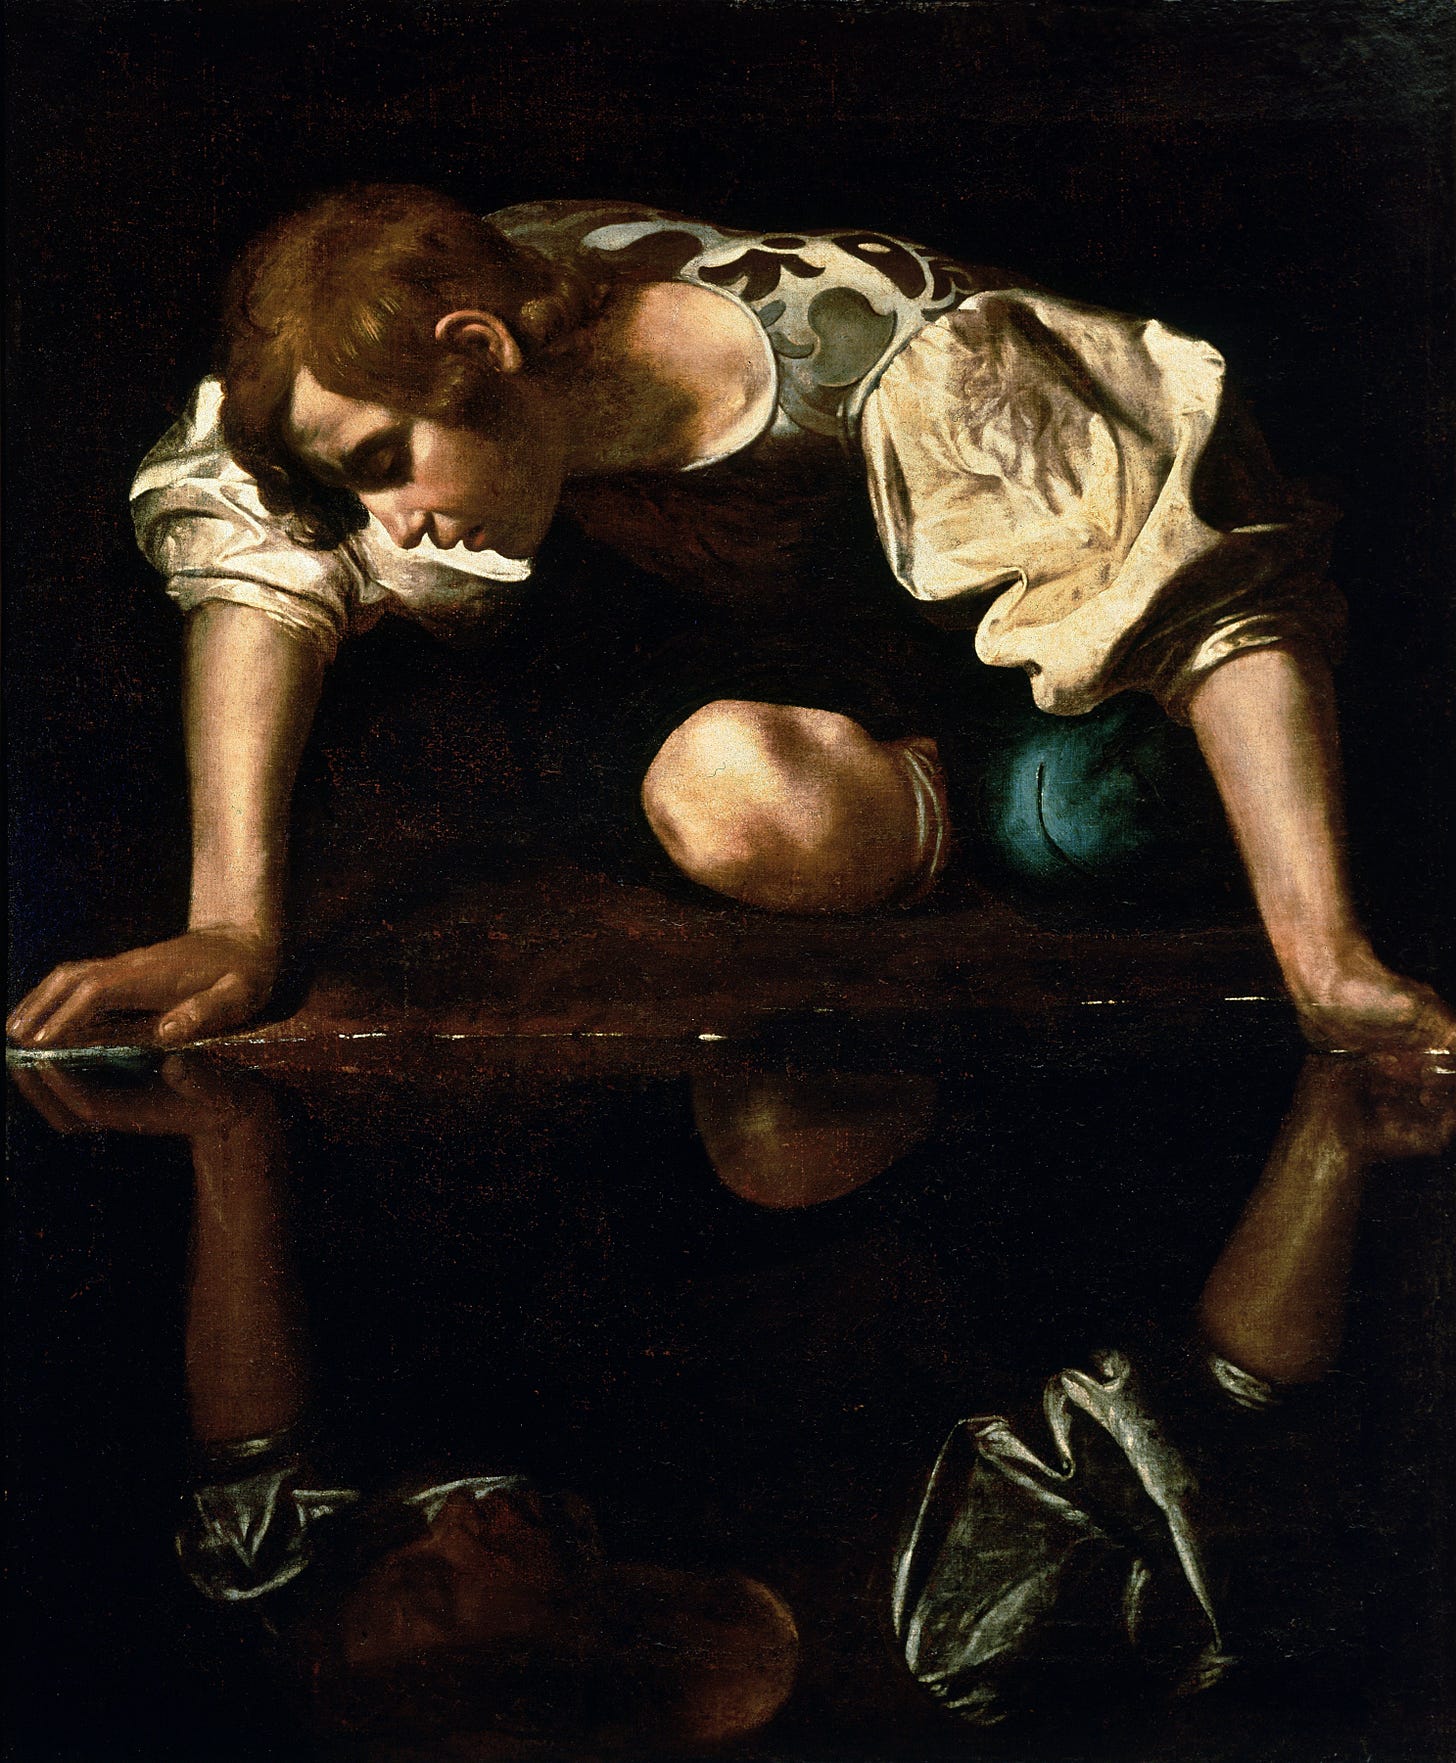 Narcissus (Caravaggio) - Wikipedia